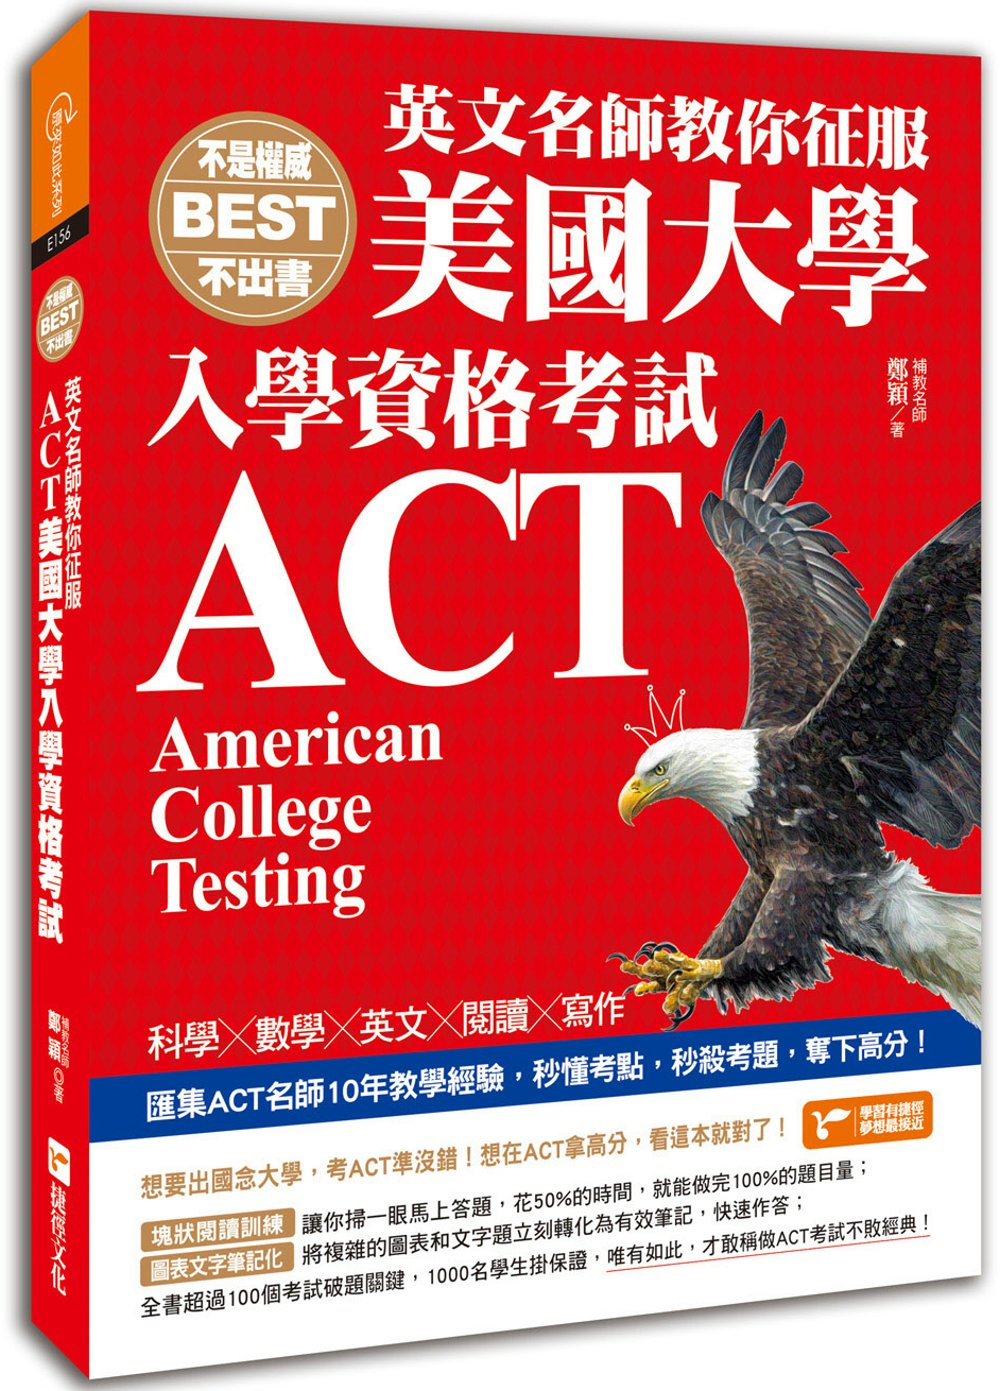 不是權威不出書：英文名師教你征服ACT美國大學入學資格考試